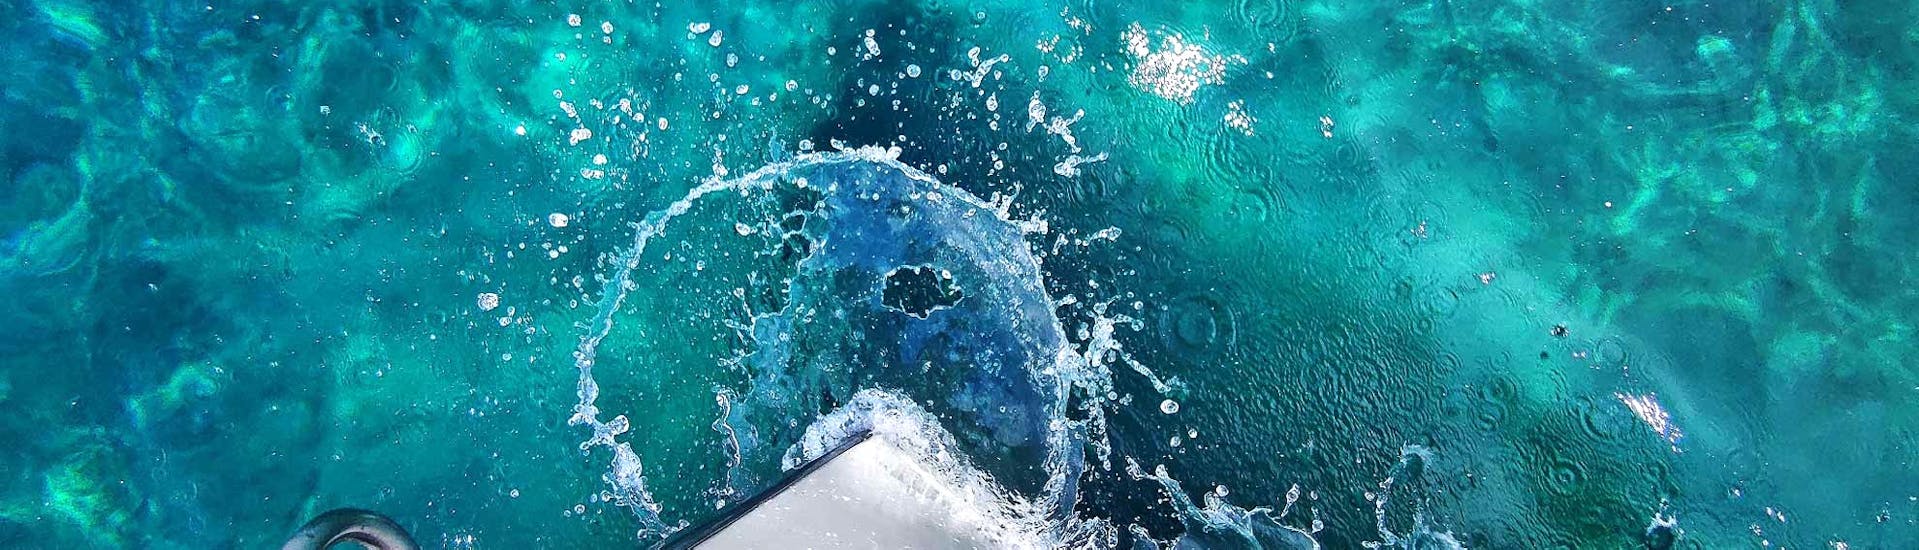 Photo des eaux crystallines que l'on verra lors de la Balade en bateau de Santa Maria di Leuca aux grottes de l'Adriatique et de la mer Ionienne avec Barca del Porto Leuca.